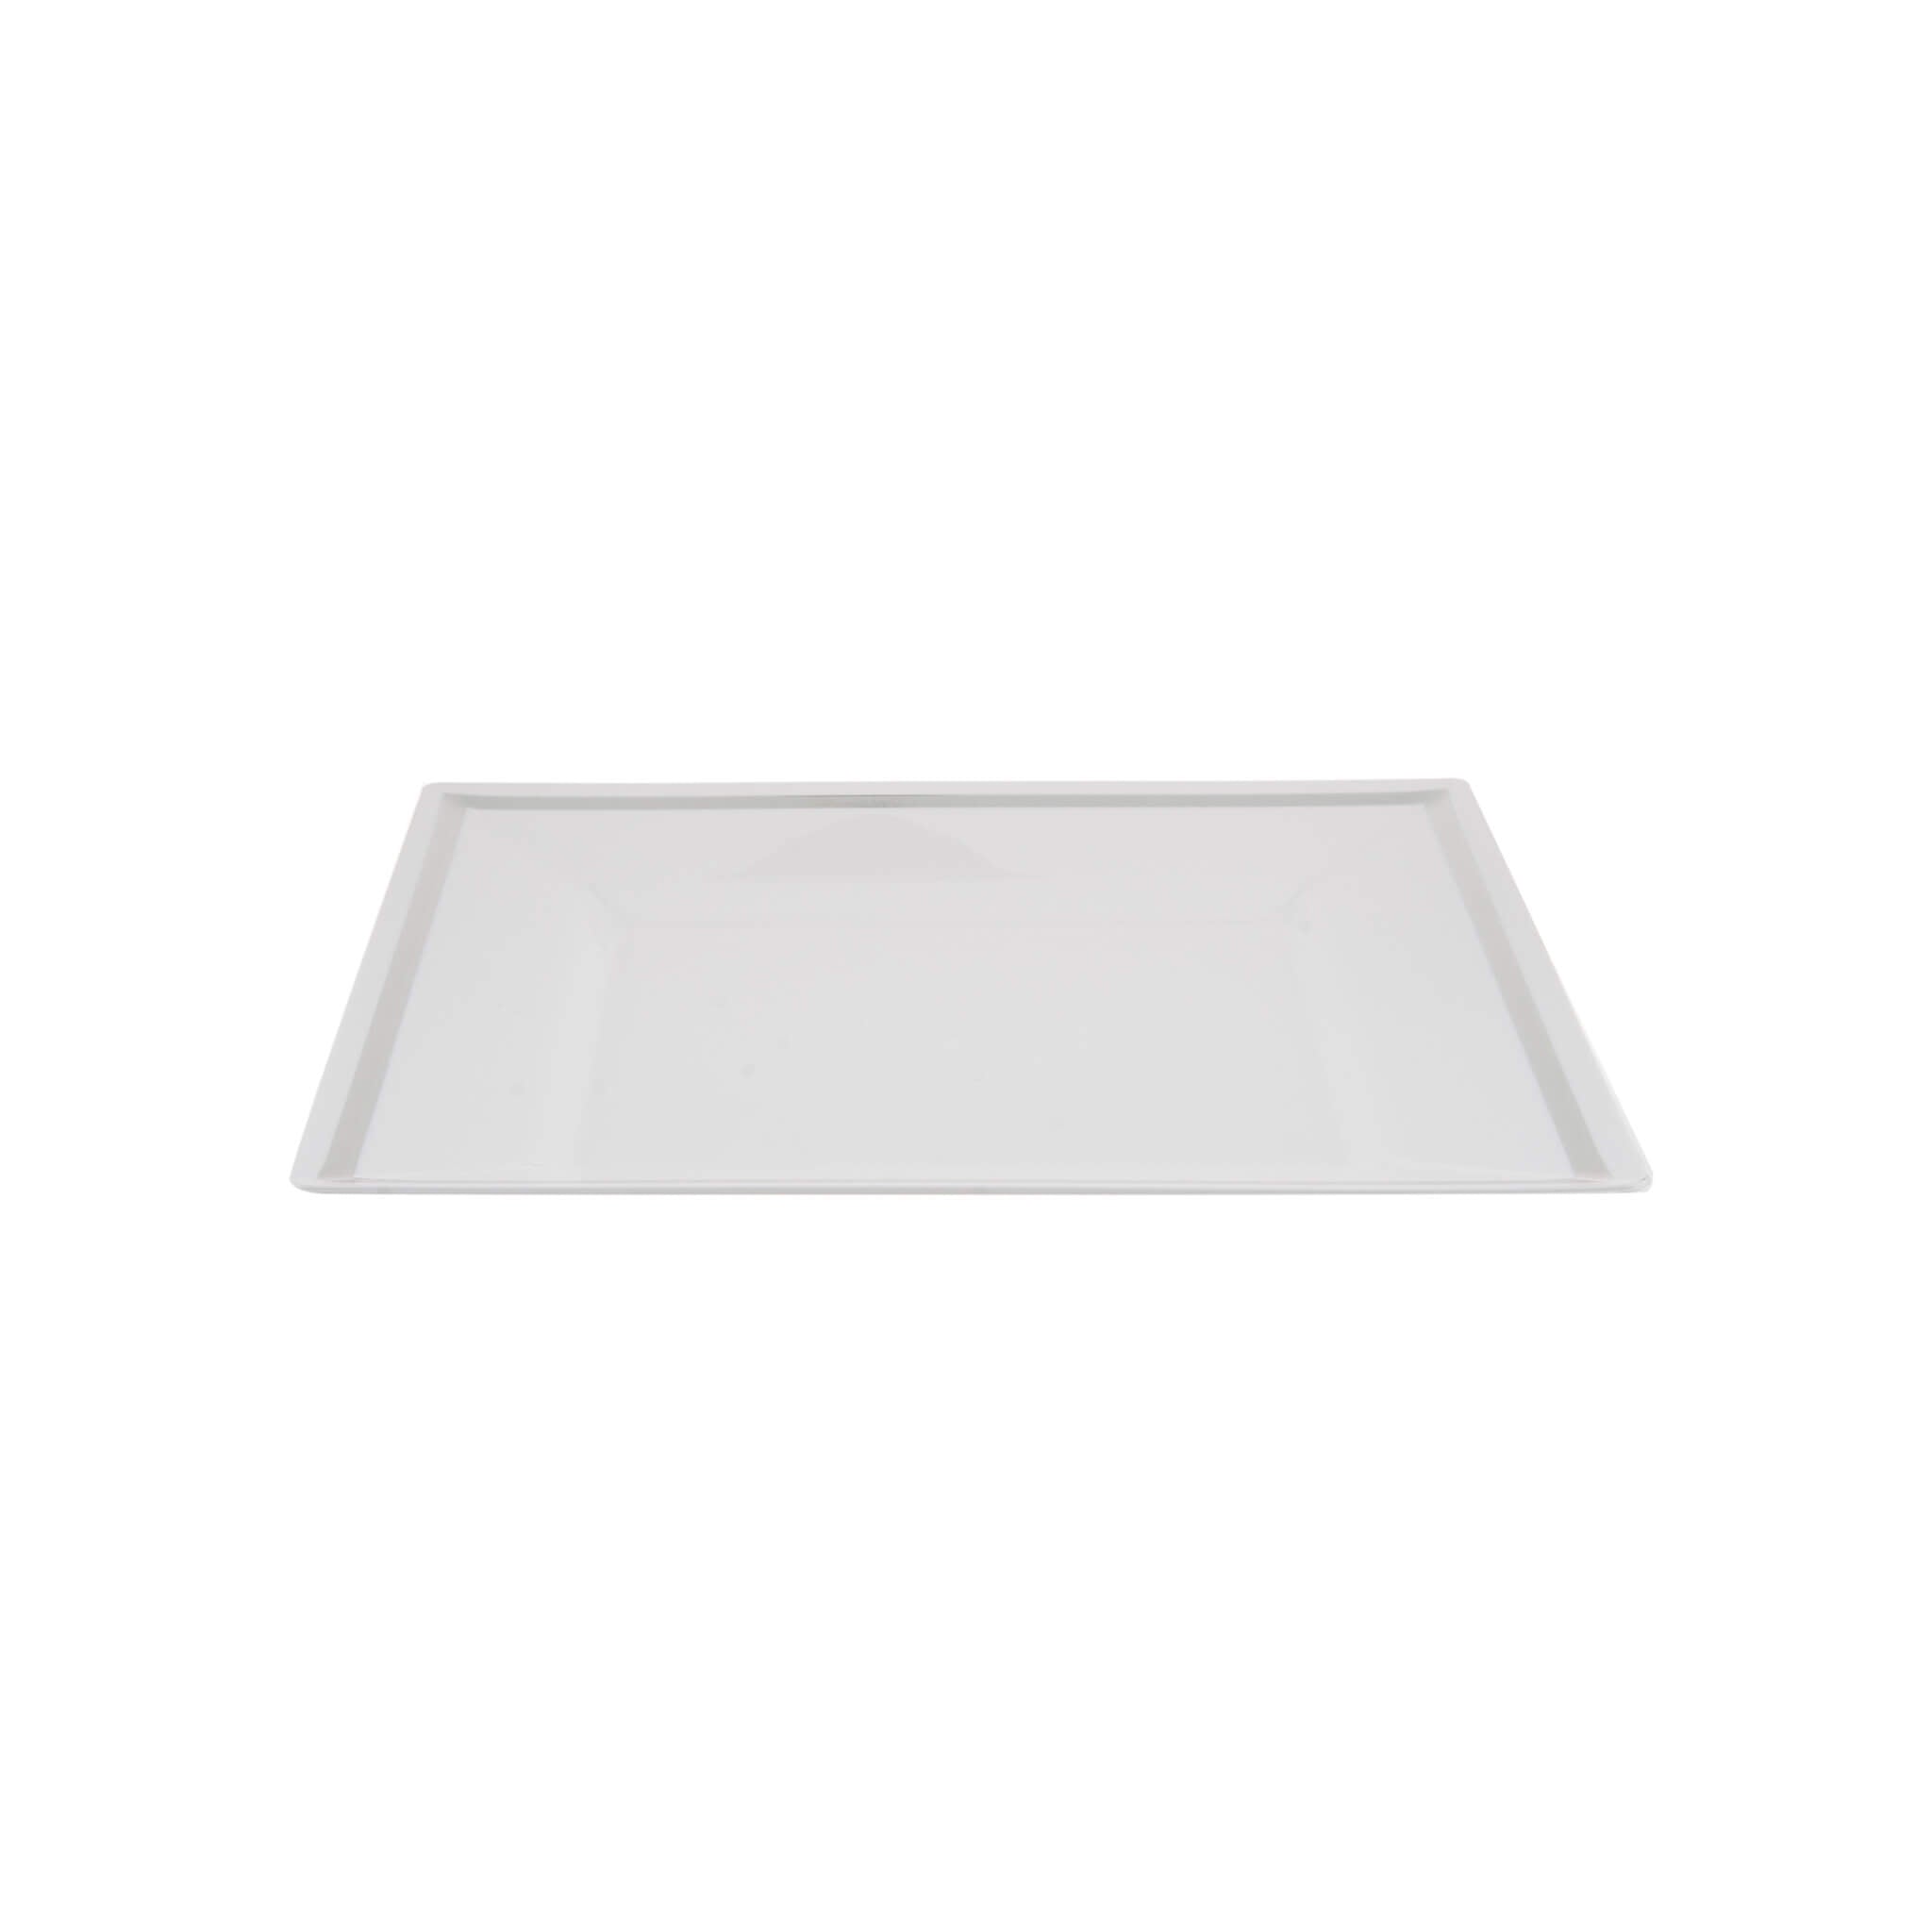 10 Pieces White Square Plate With Silver Rim Design